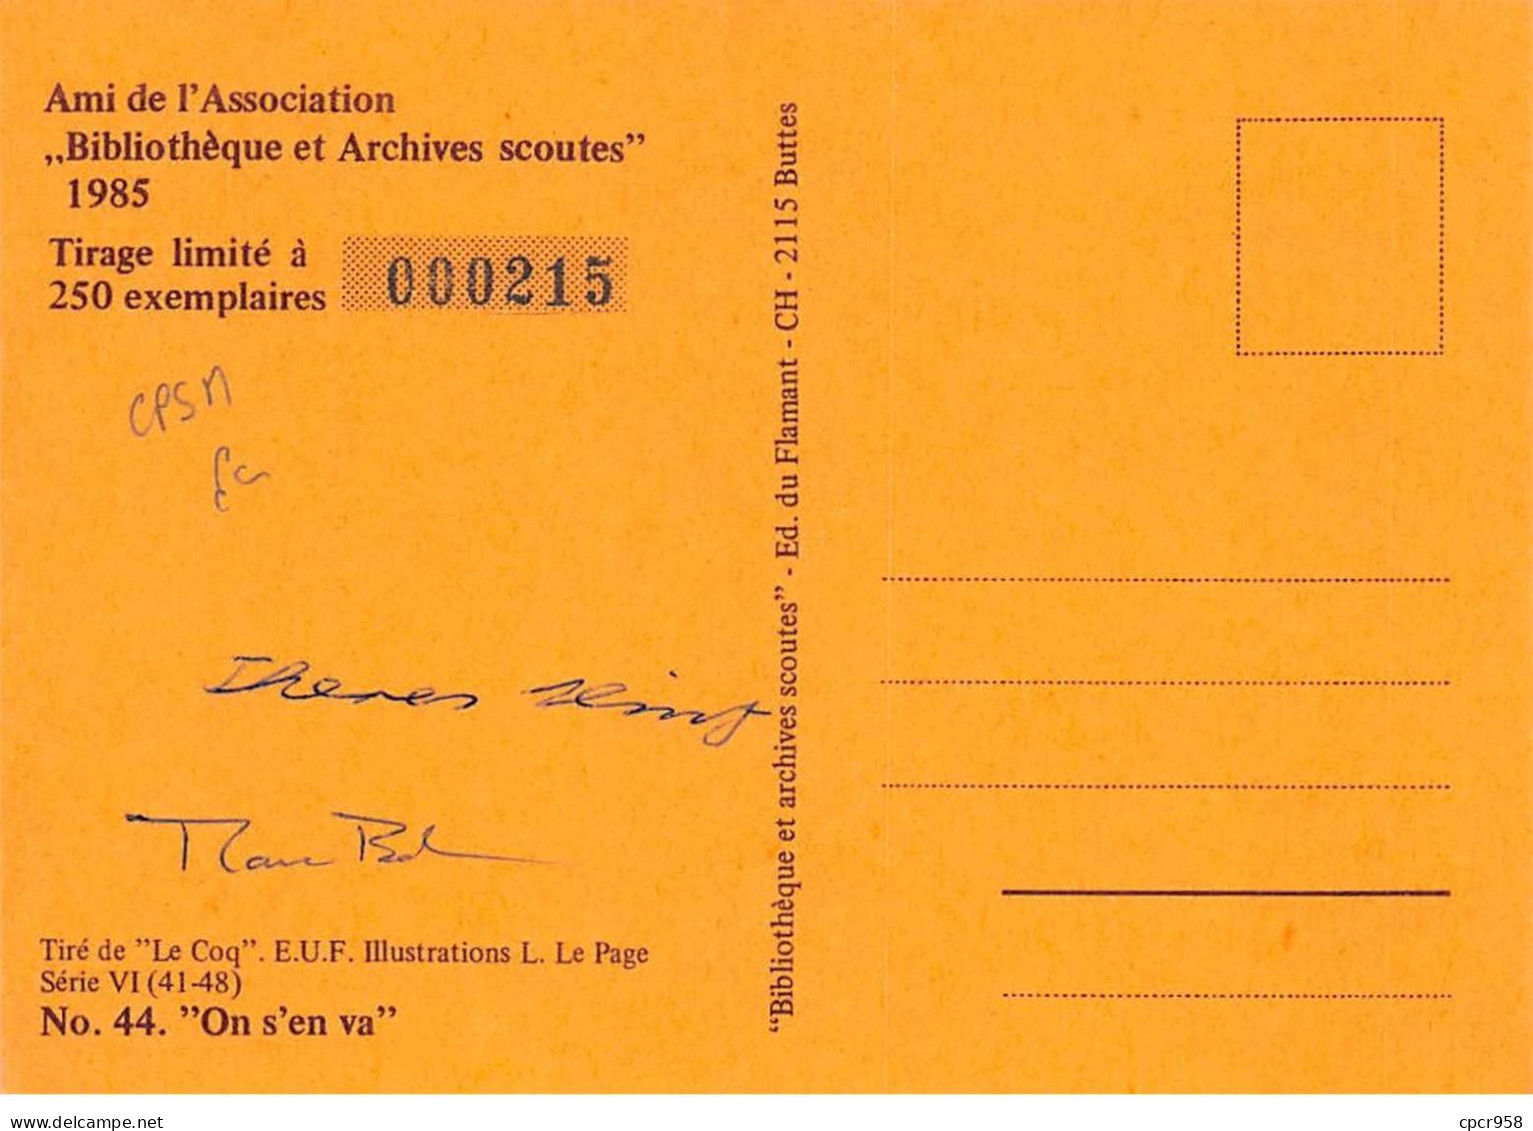 SCOUTISME - SAN36109 - Ami De L'Association Bibliothèque Et Archives Scoutes 1985 - N°44 "On S'en Va" - CPSM 15x10 Cm - Padvinderij